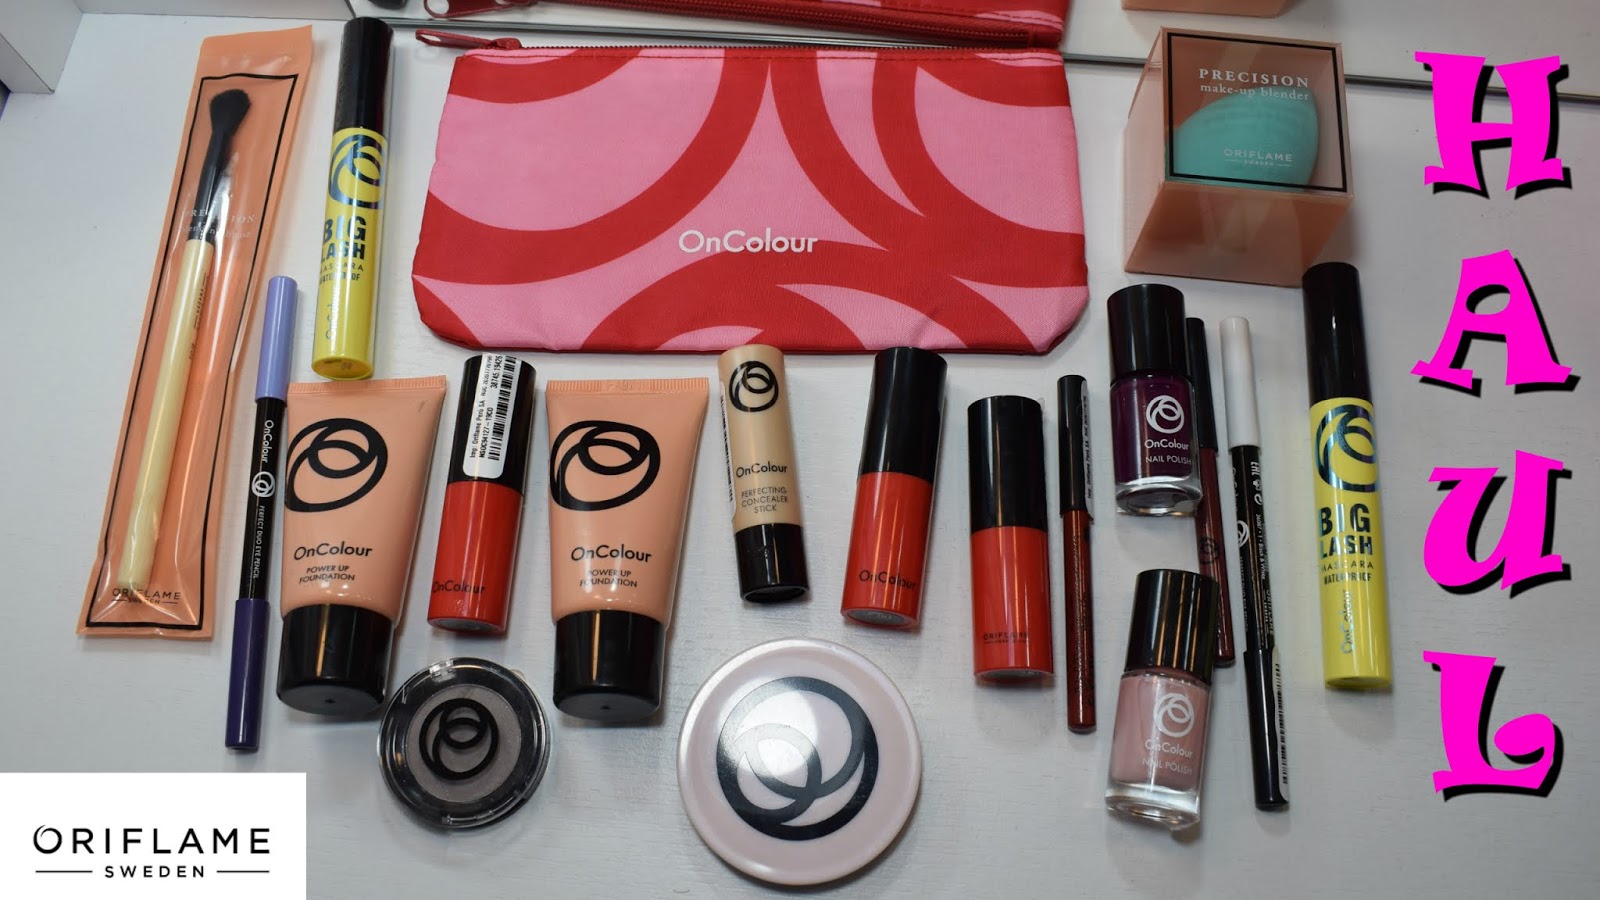 Monique Blogger: Haul de maquillaje de Oriflame | nueva línea On Colour